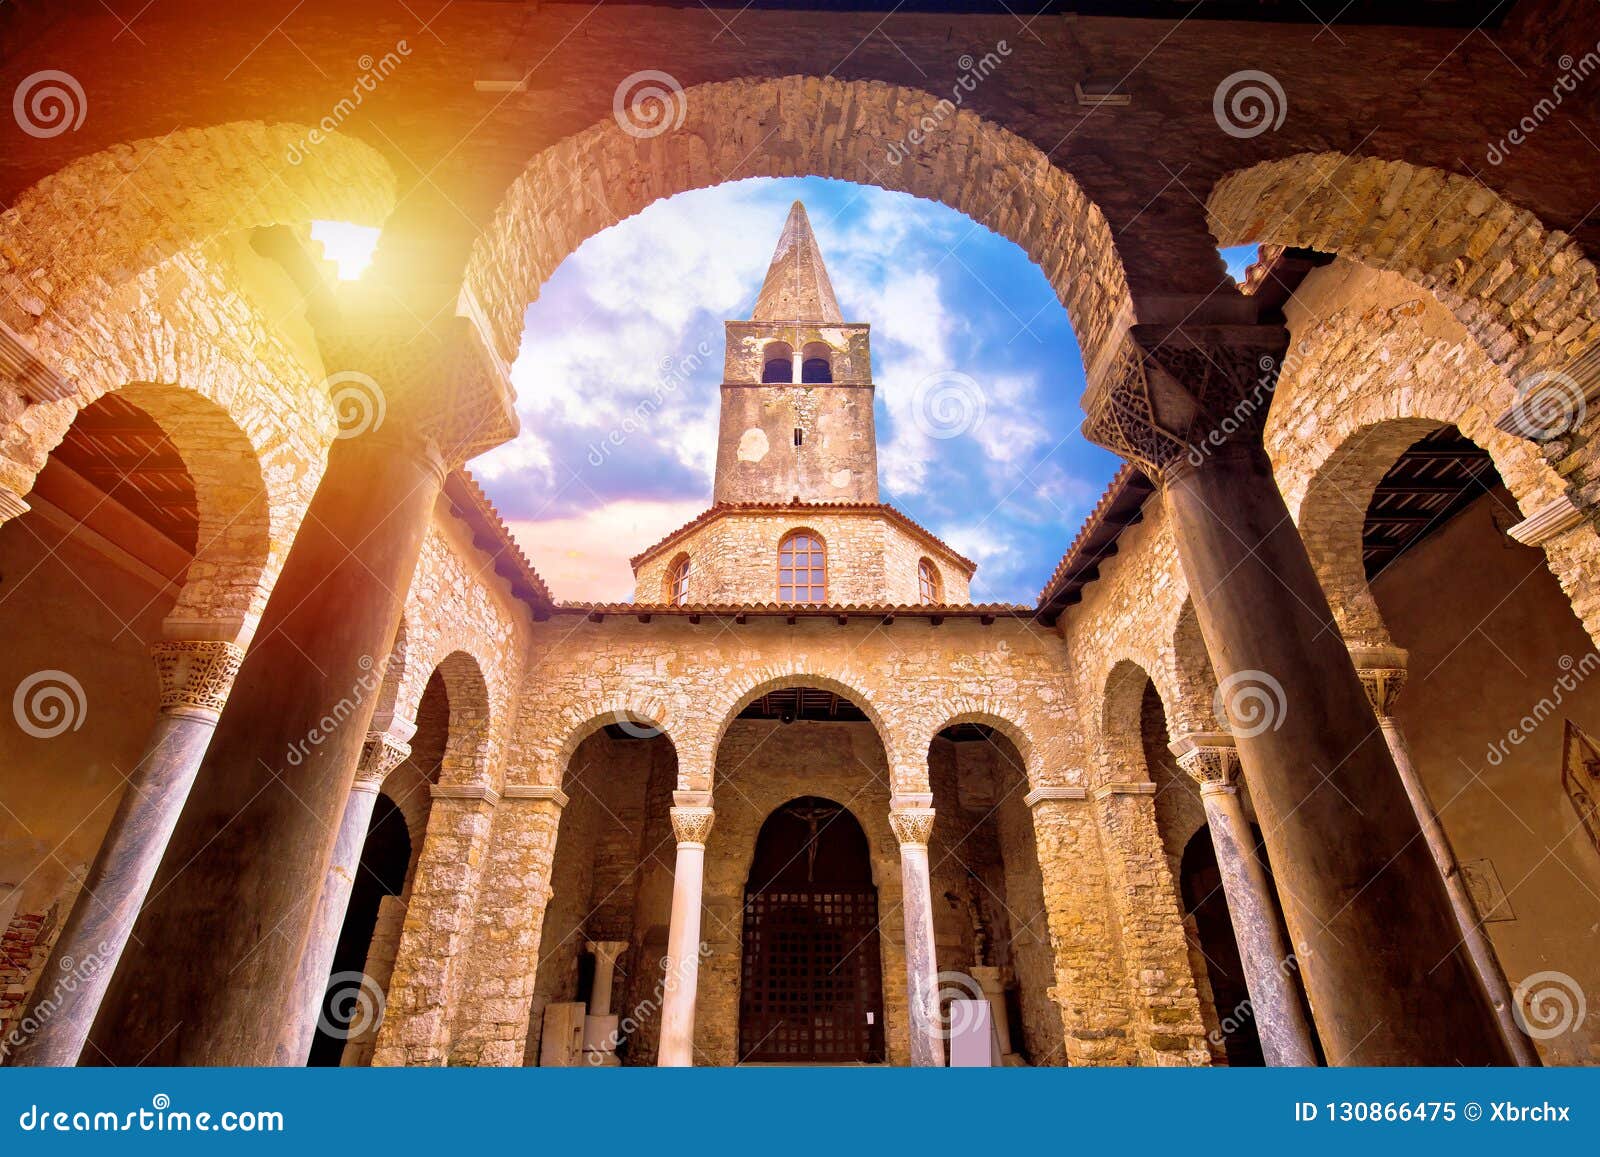 euphrasian basilica in porec arcades and tower sun haze view